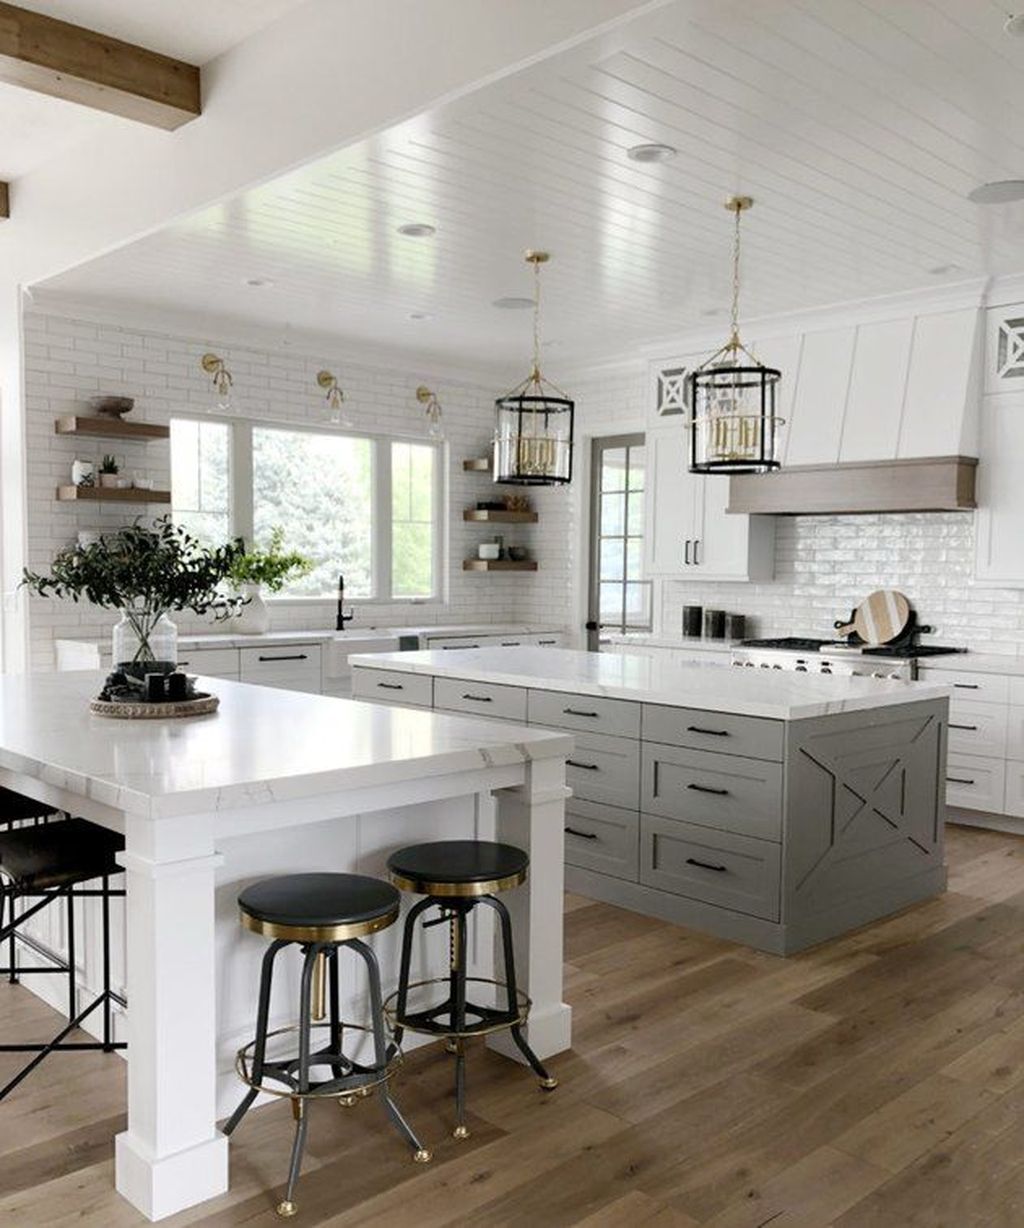 34 Stunning Farmhouse Kitchen Island Design Ideas - HMDCRTN